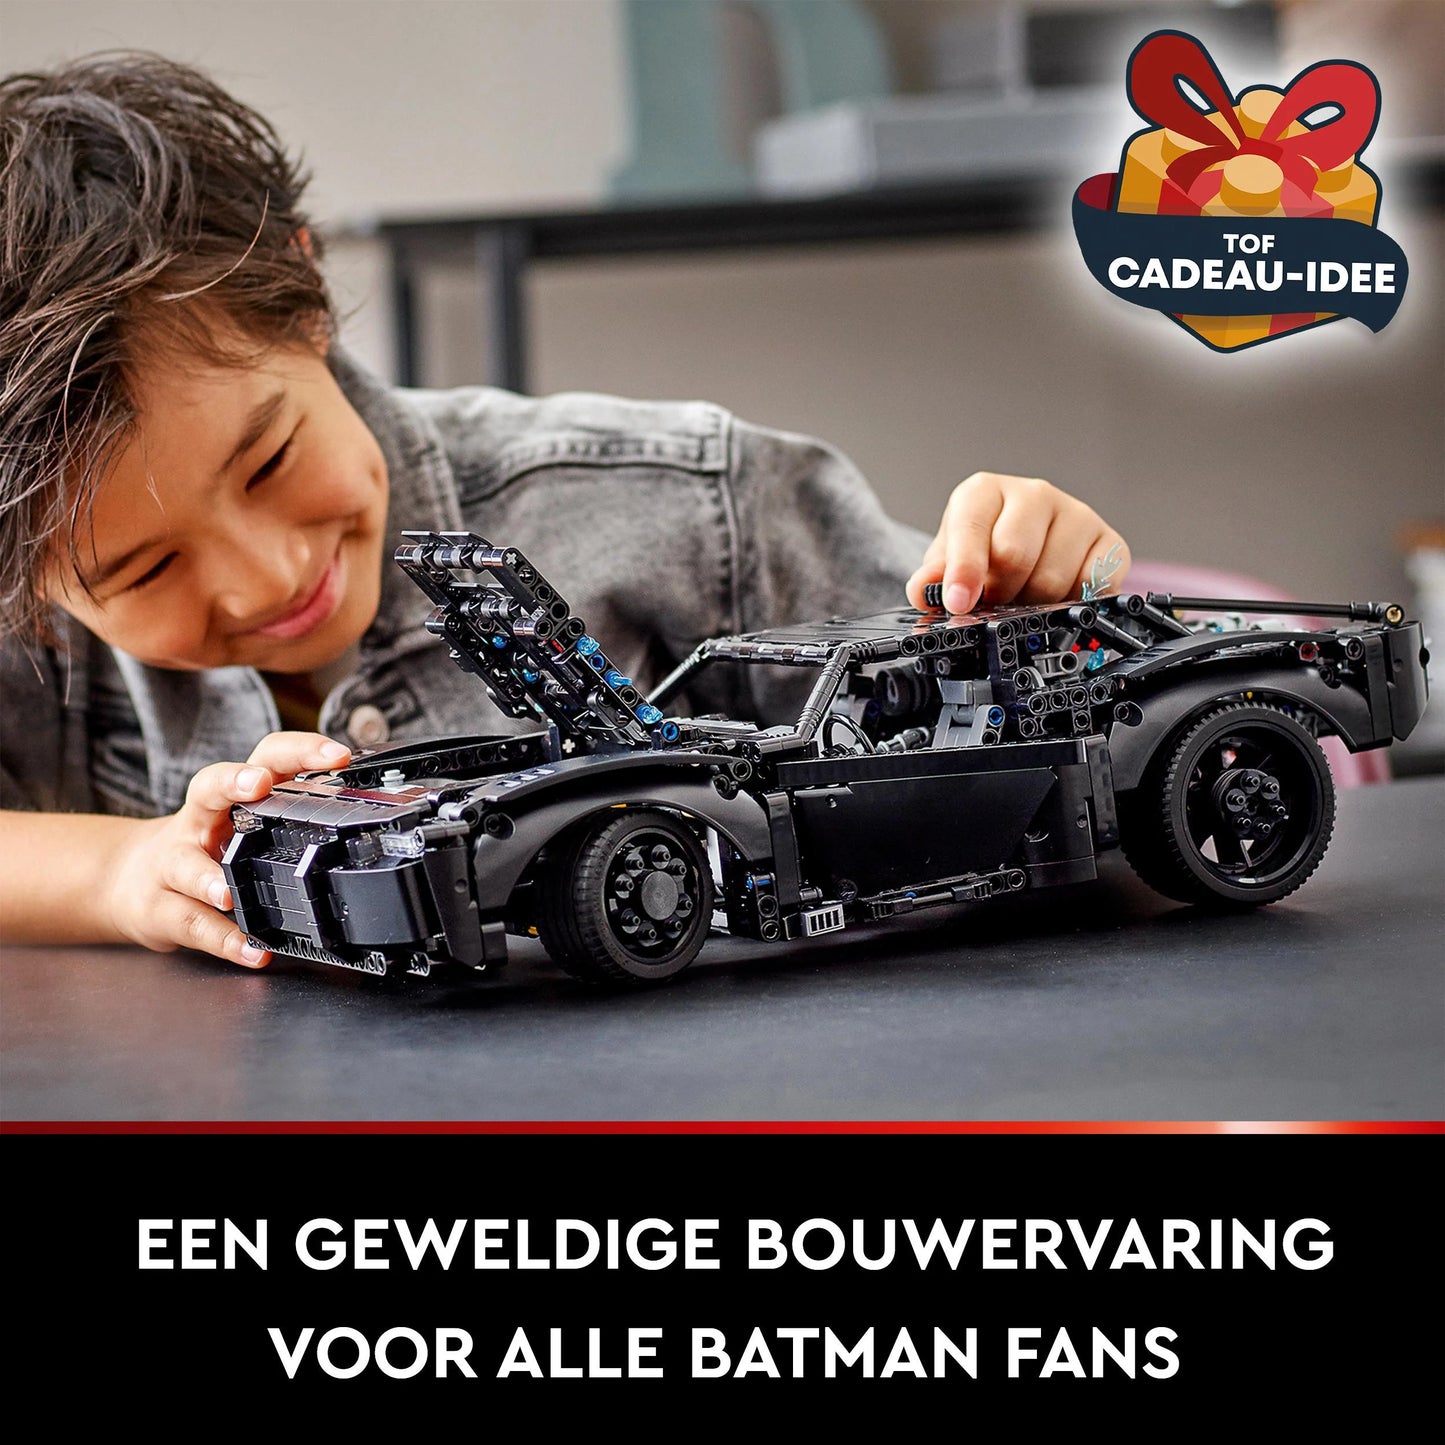 The Batman Batmobile - LEGO Batman